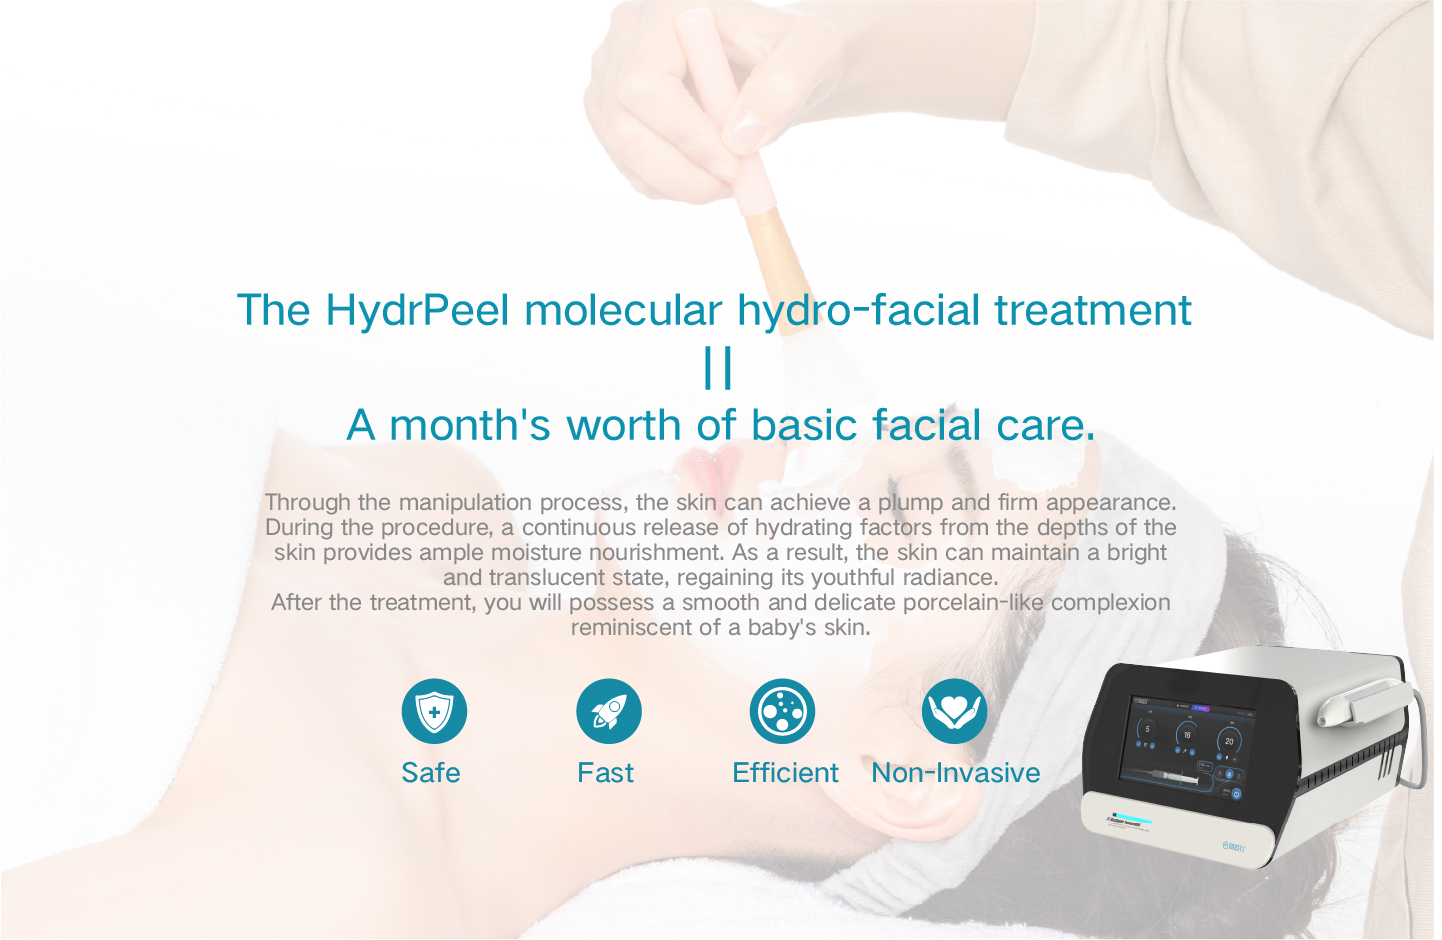 De HydrPeel moleculaire hydro-gezichtsbehandeling komt overeen met een maand basis gezichtsverzorging